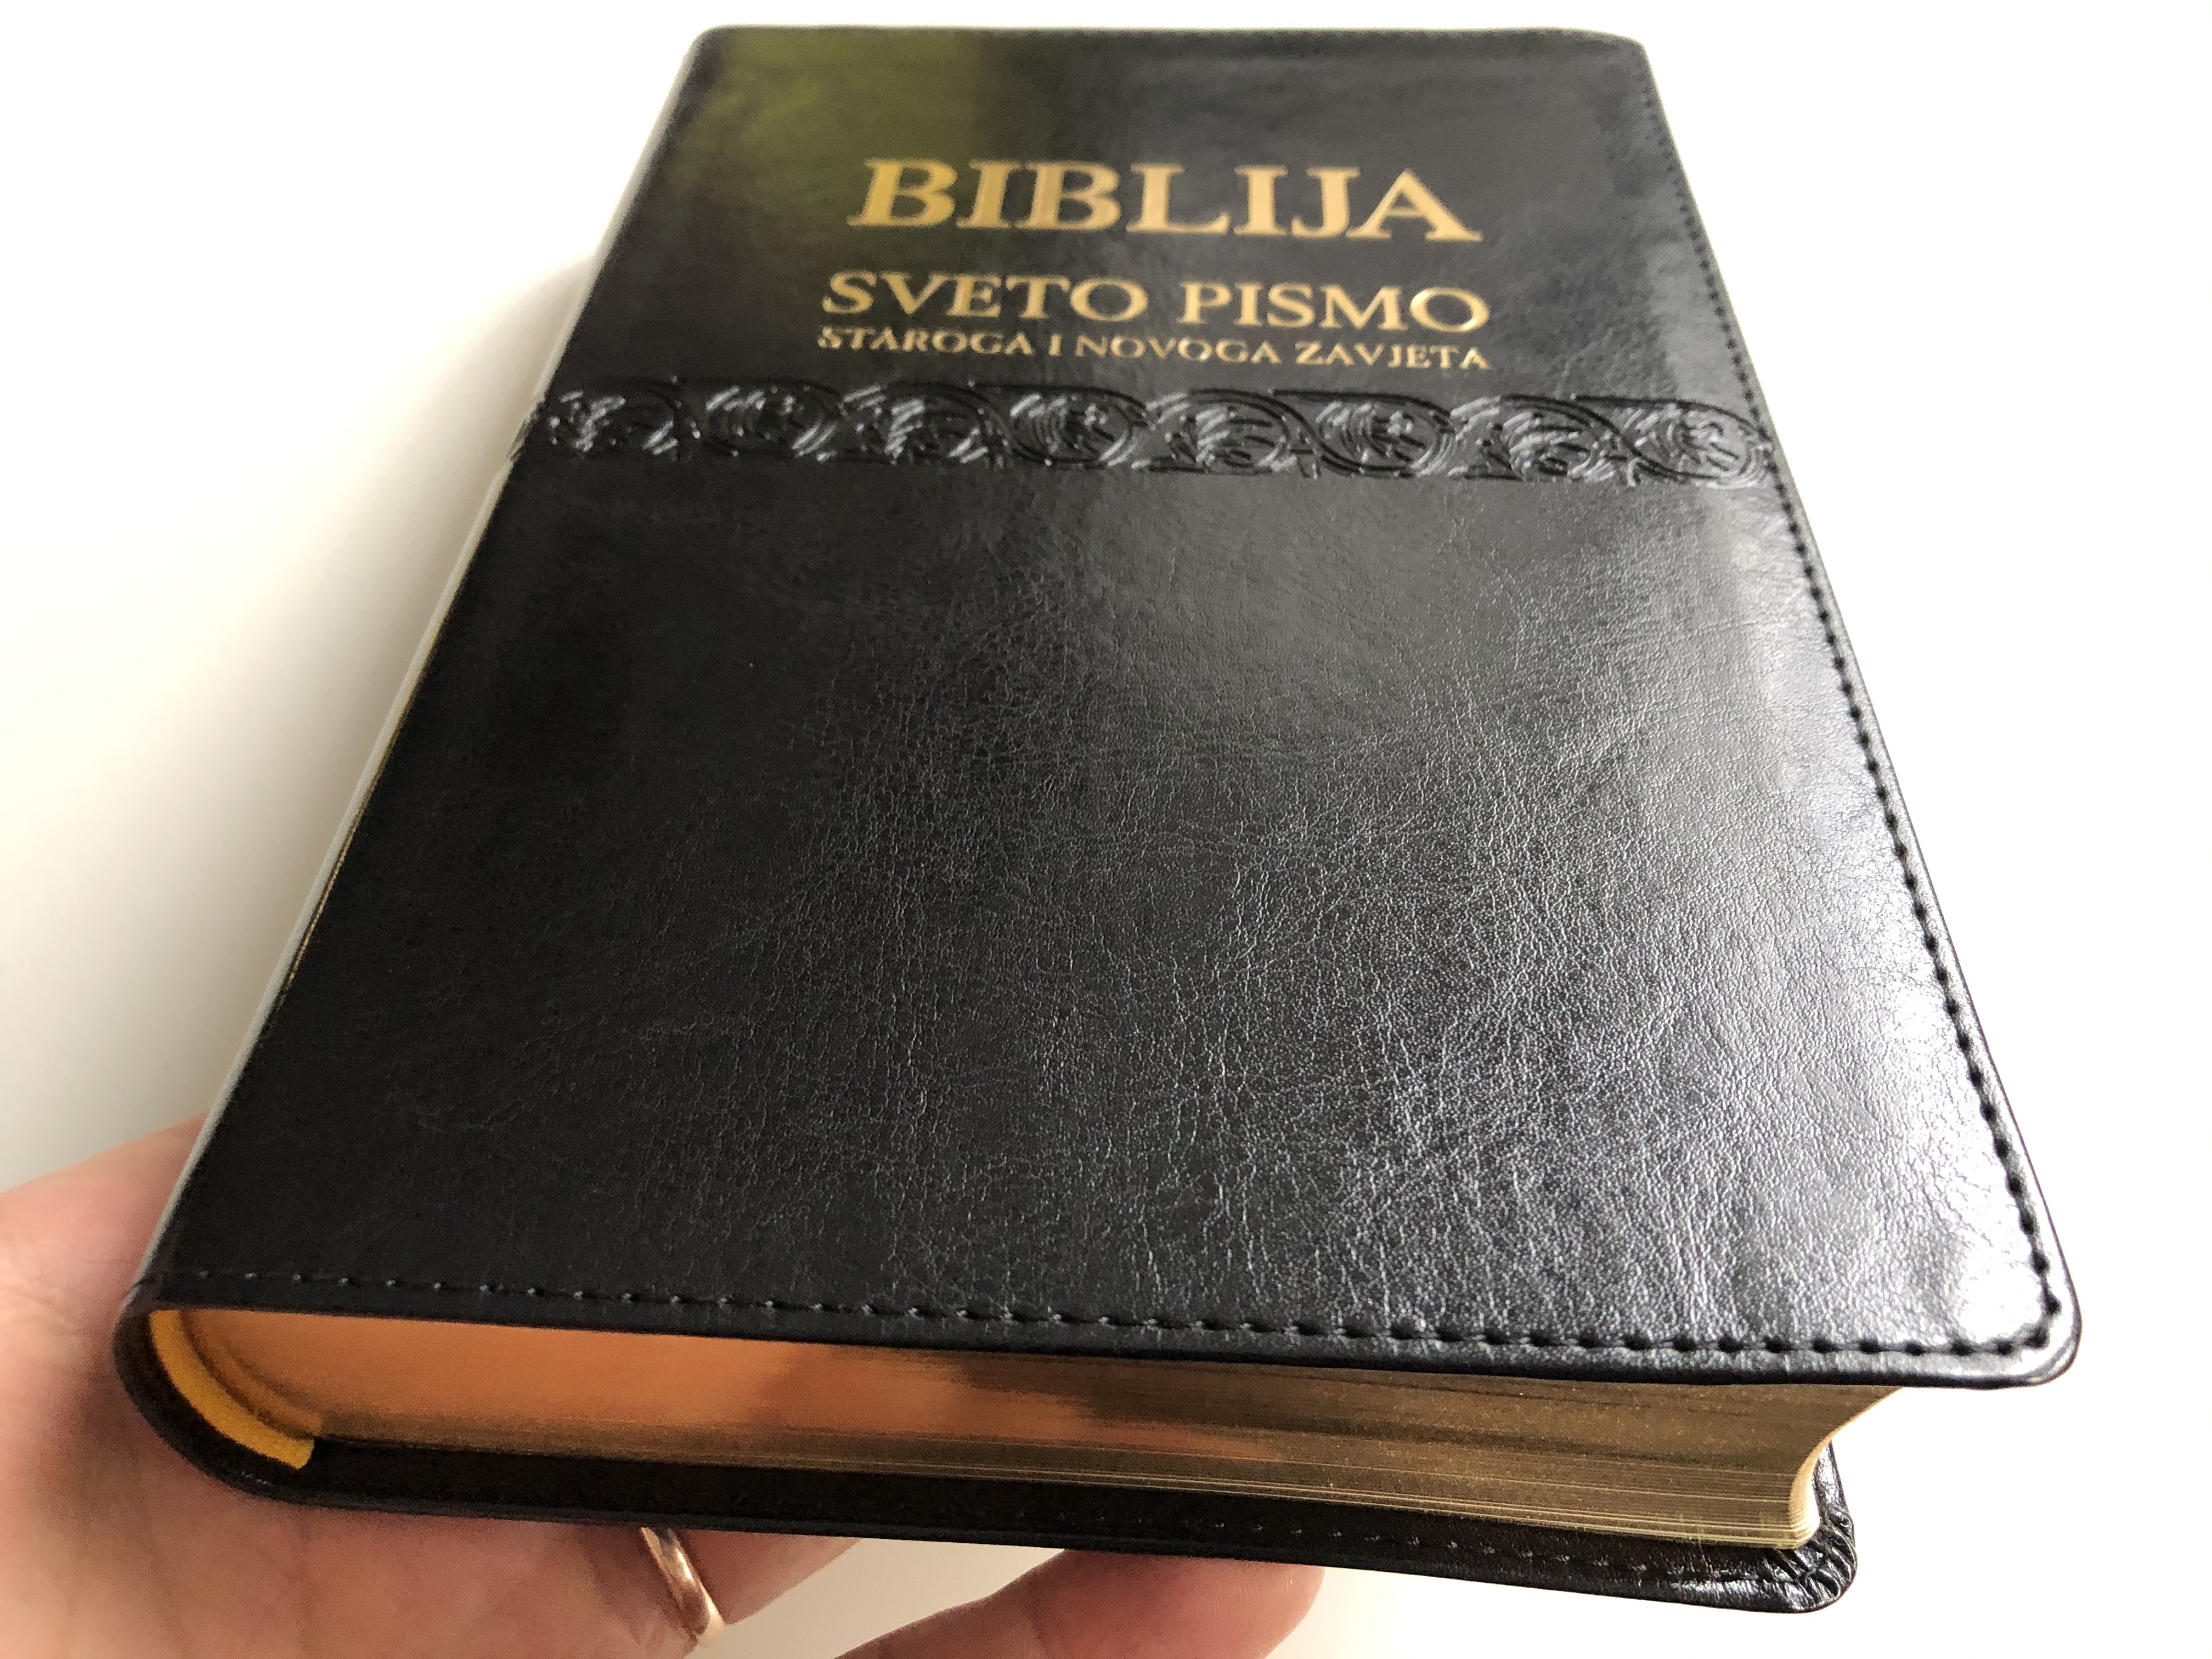 black-leather-bound-croatian-holy-bible-biblija-sveto-pismo-staroga-i-novoga-zavjeta-2.jpg